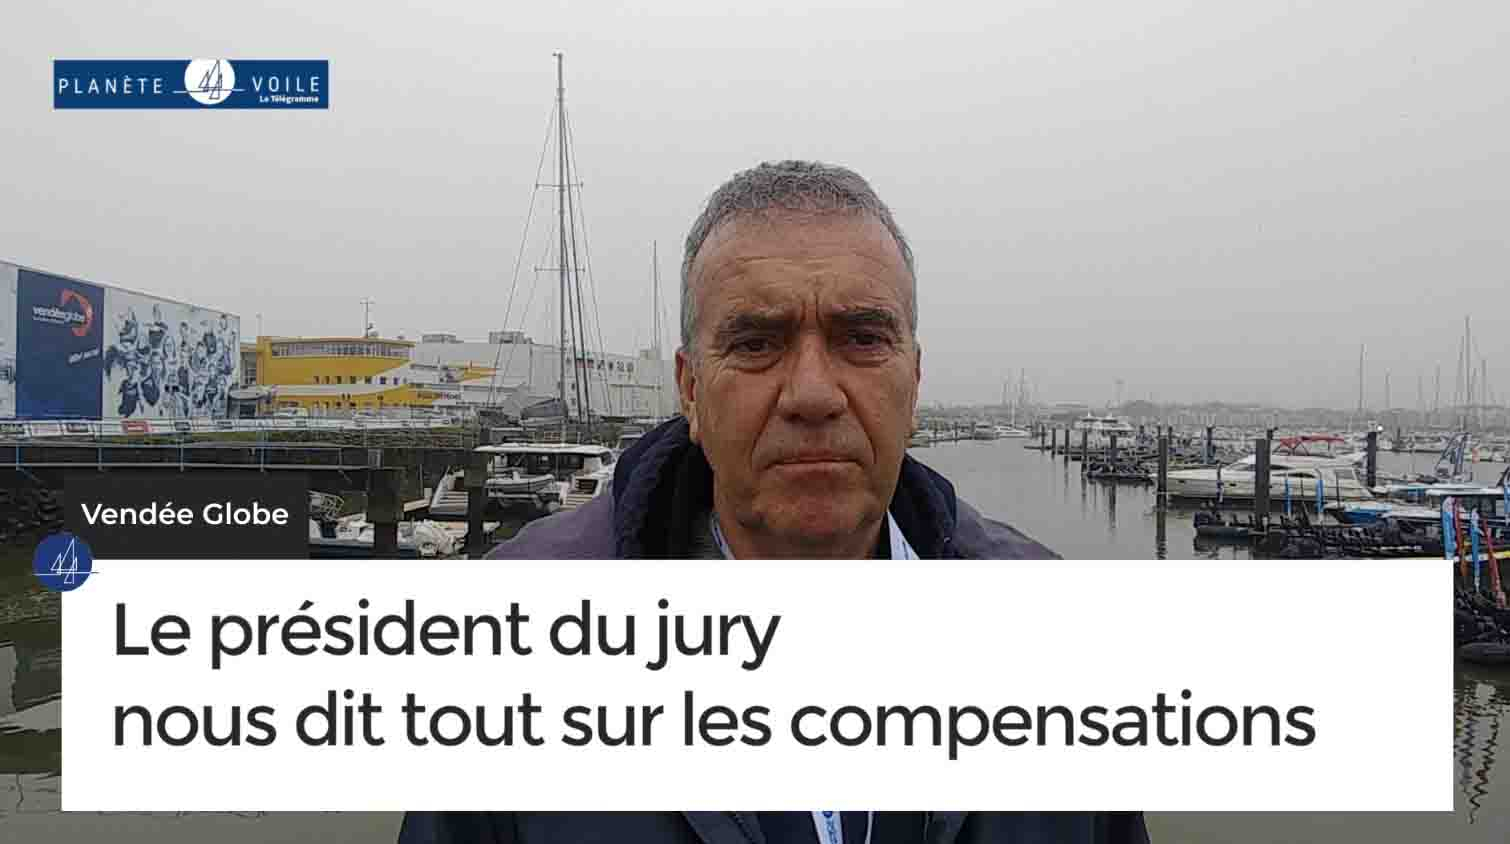 Vendée Globe. Le président du jury nous dit tout sur les compensations (Le Télégramme)